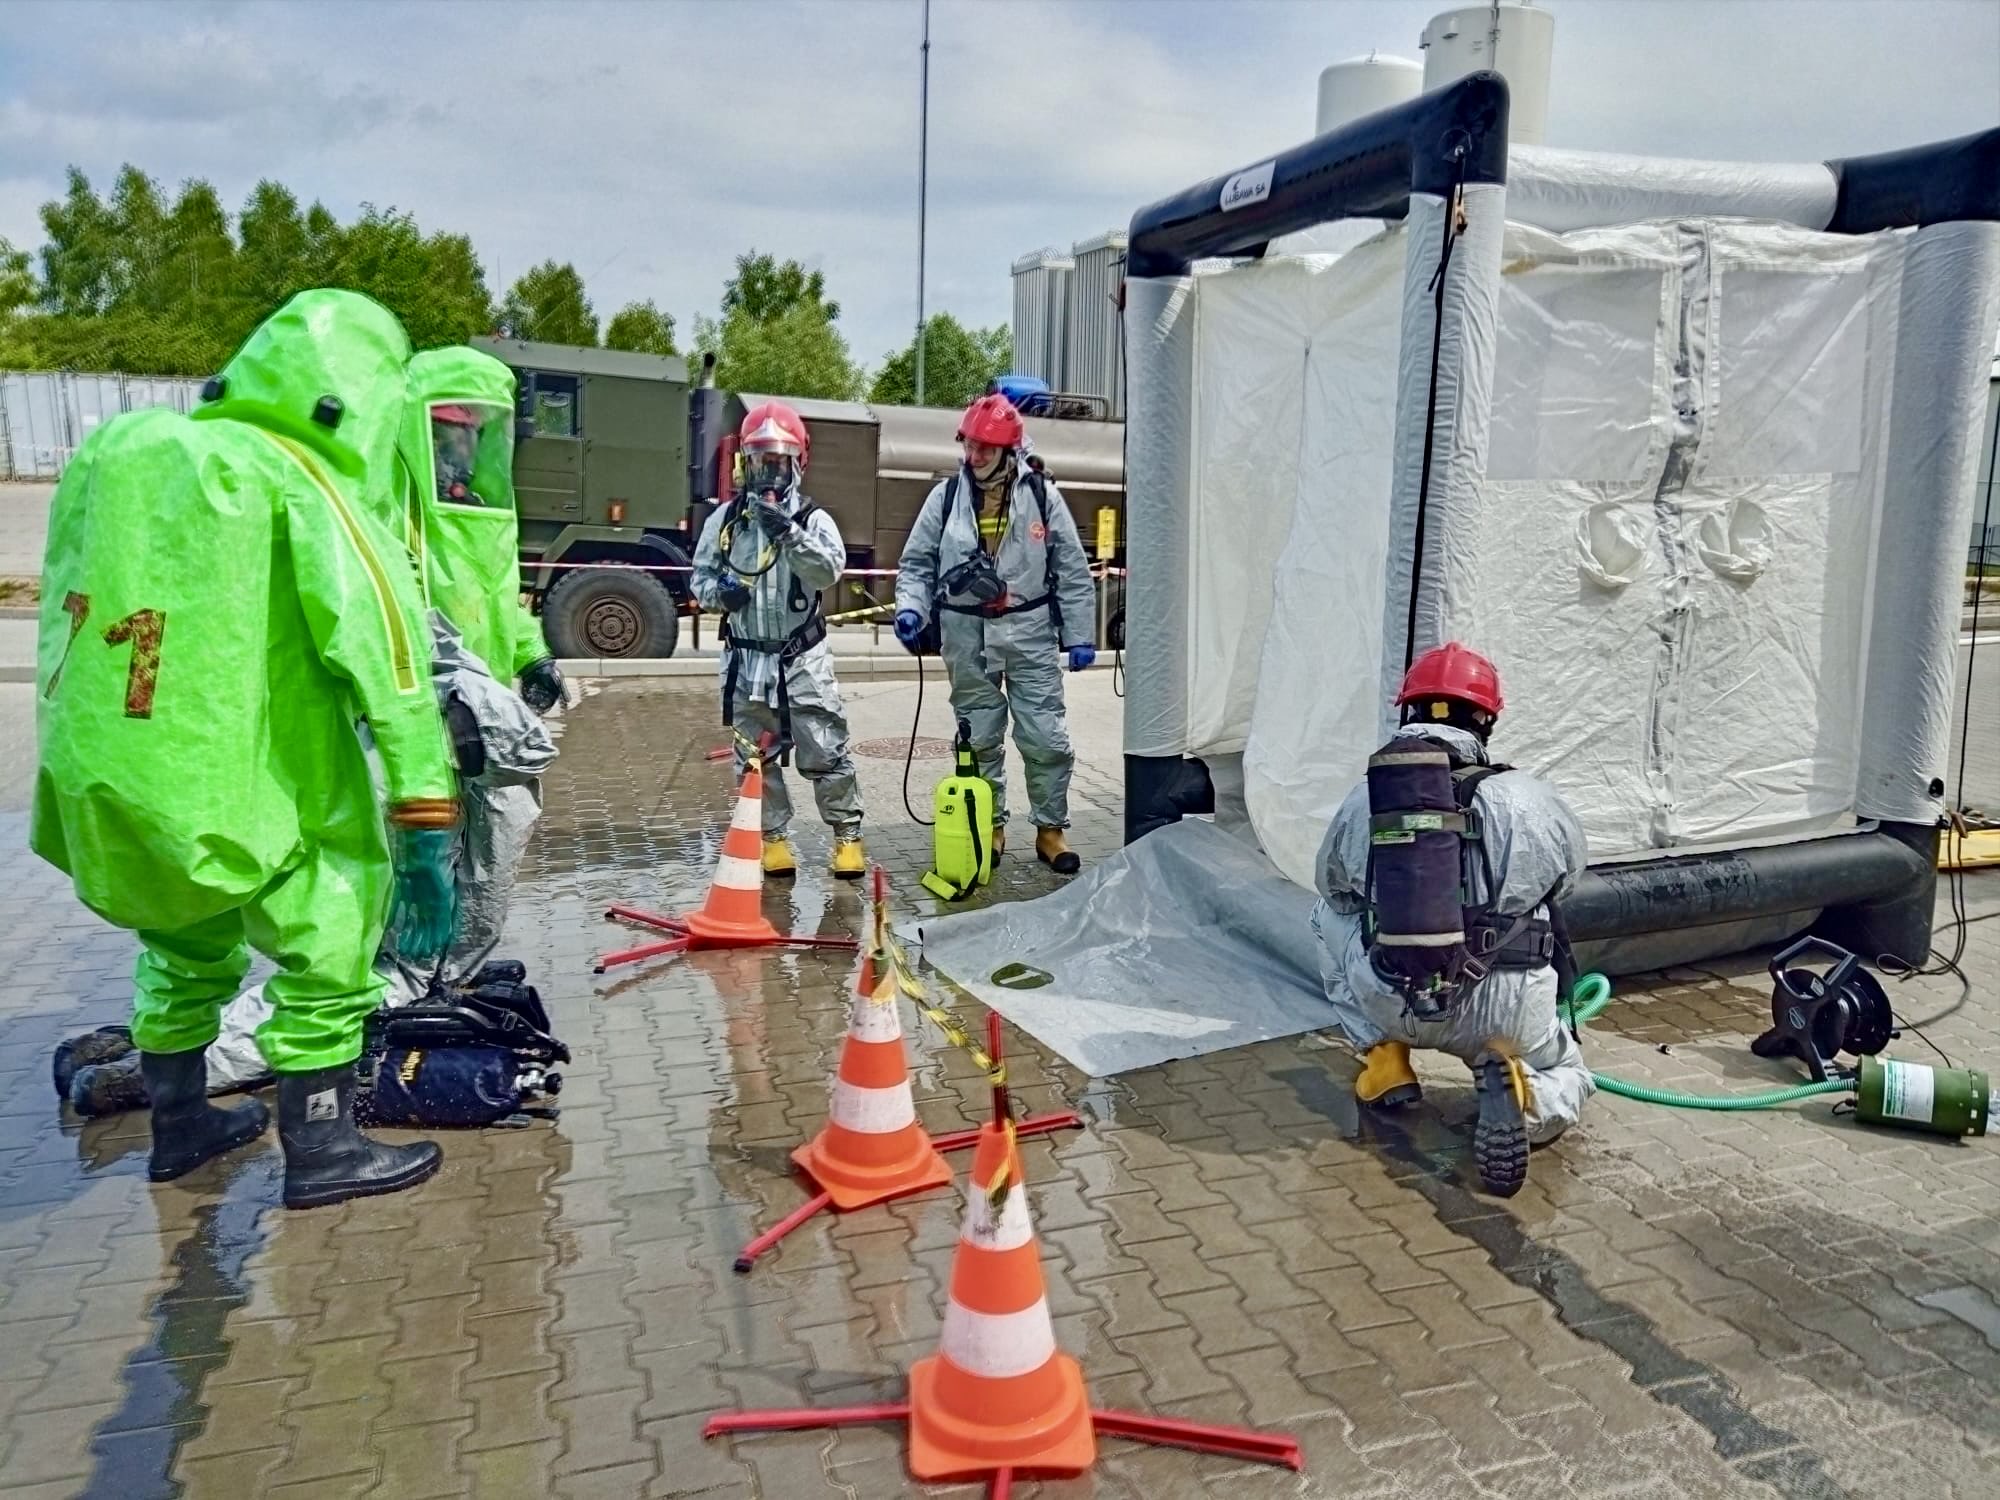 Strażacy ratownictwa chemicznego w skafandrach na placu zewnętrznym podczas ćwiczeń, w tle samochód - cysterna